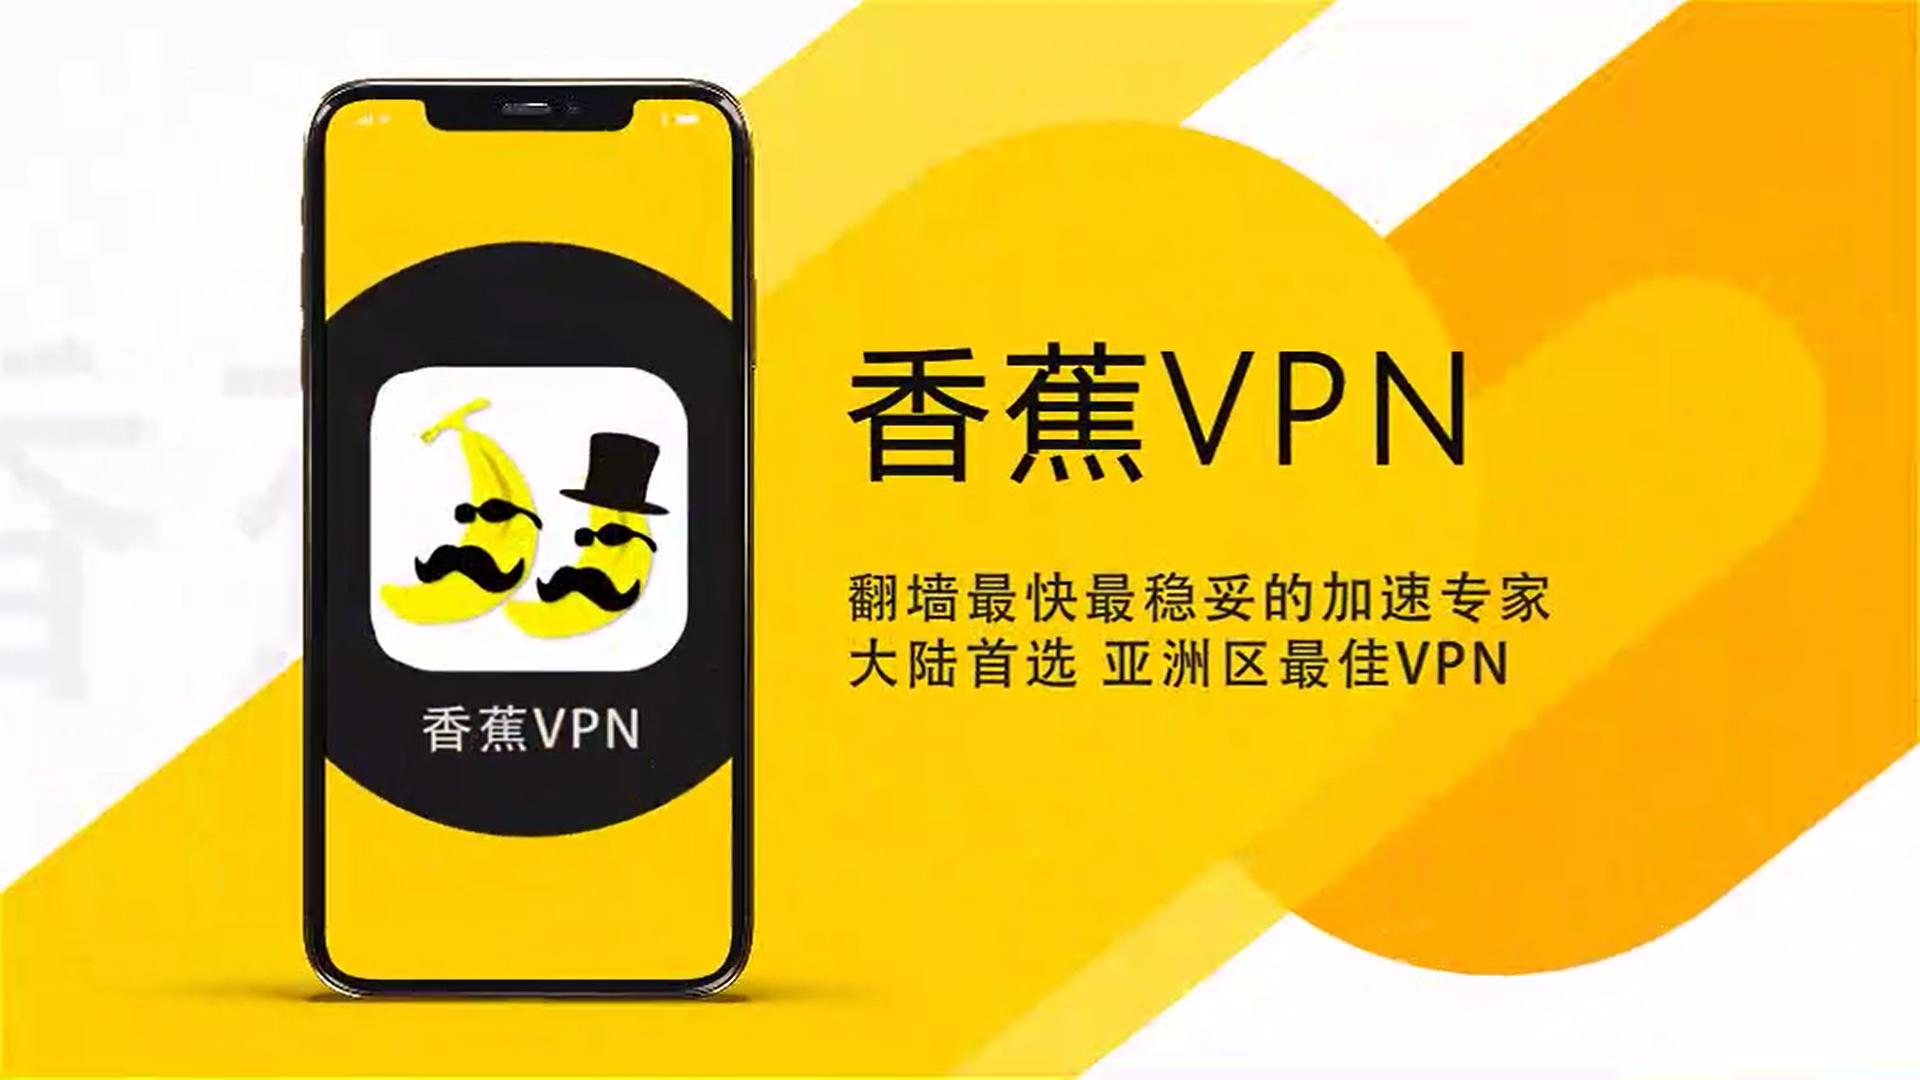 香蕉VPN— 最快最稳的VPN  亚洲线路优化 永远连接的加速专家